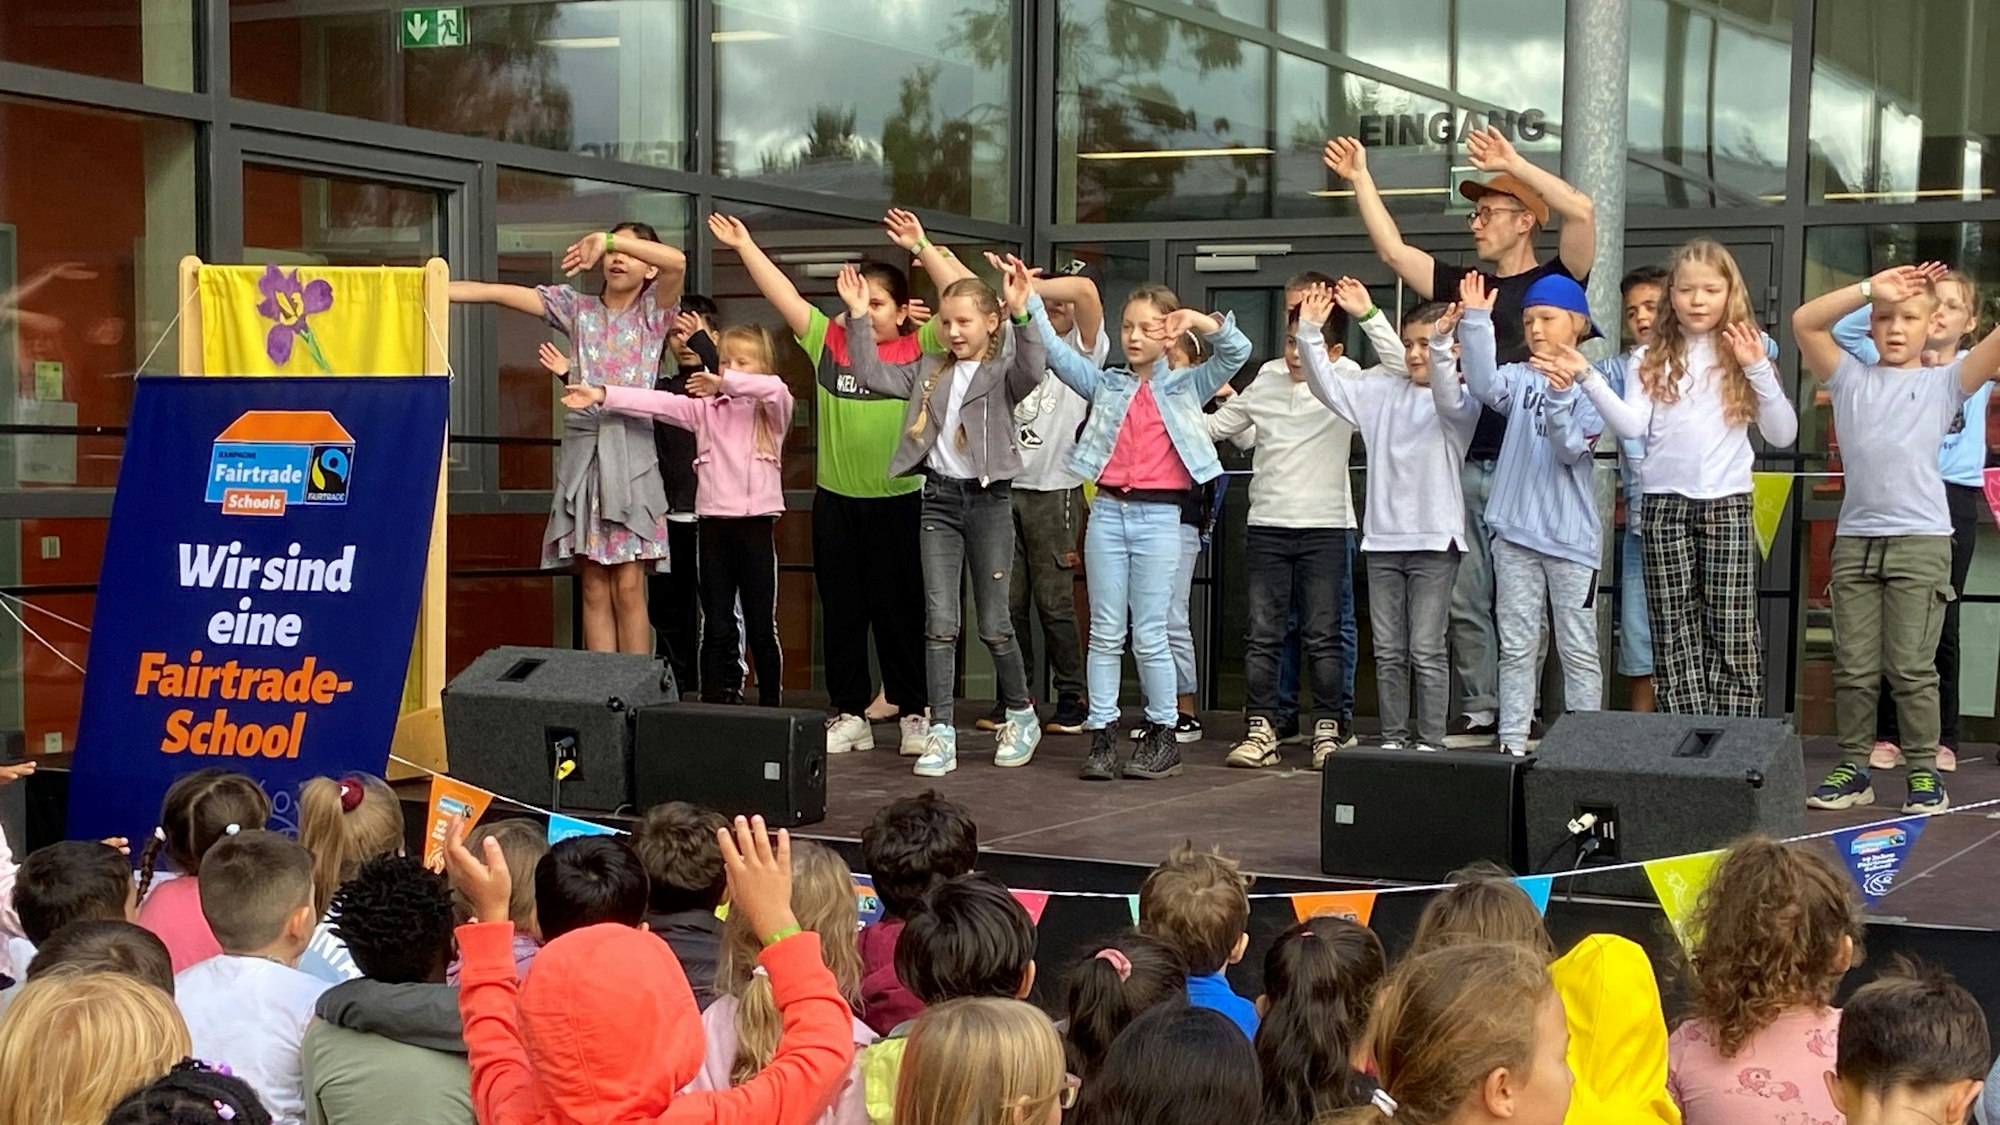 Kinder stehen mit erhobenen Armen auf einer Bühne und singen.